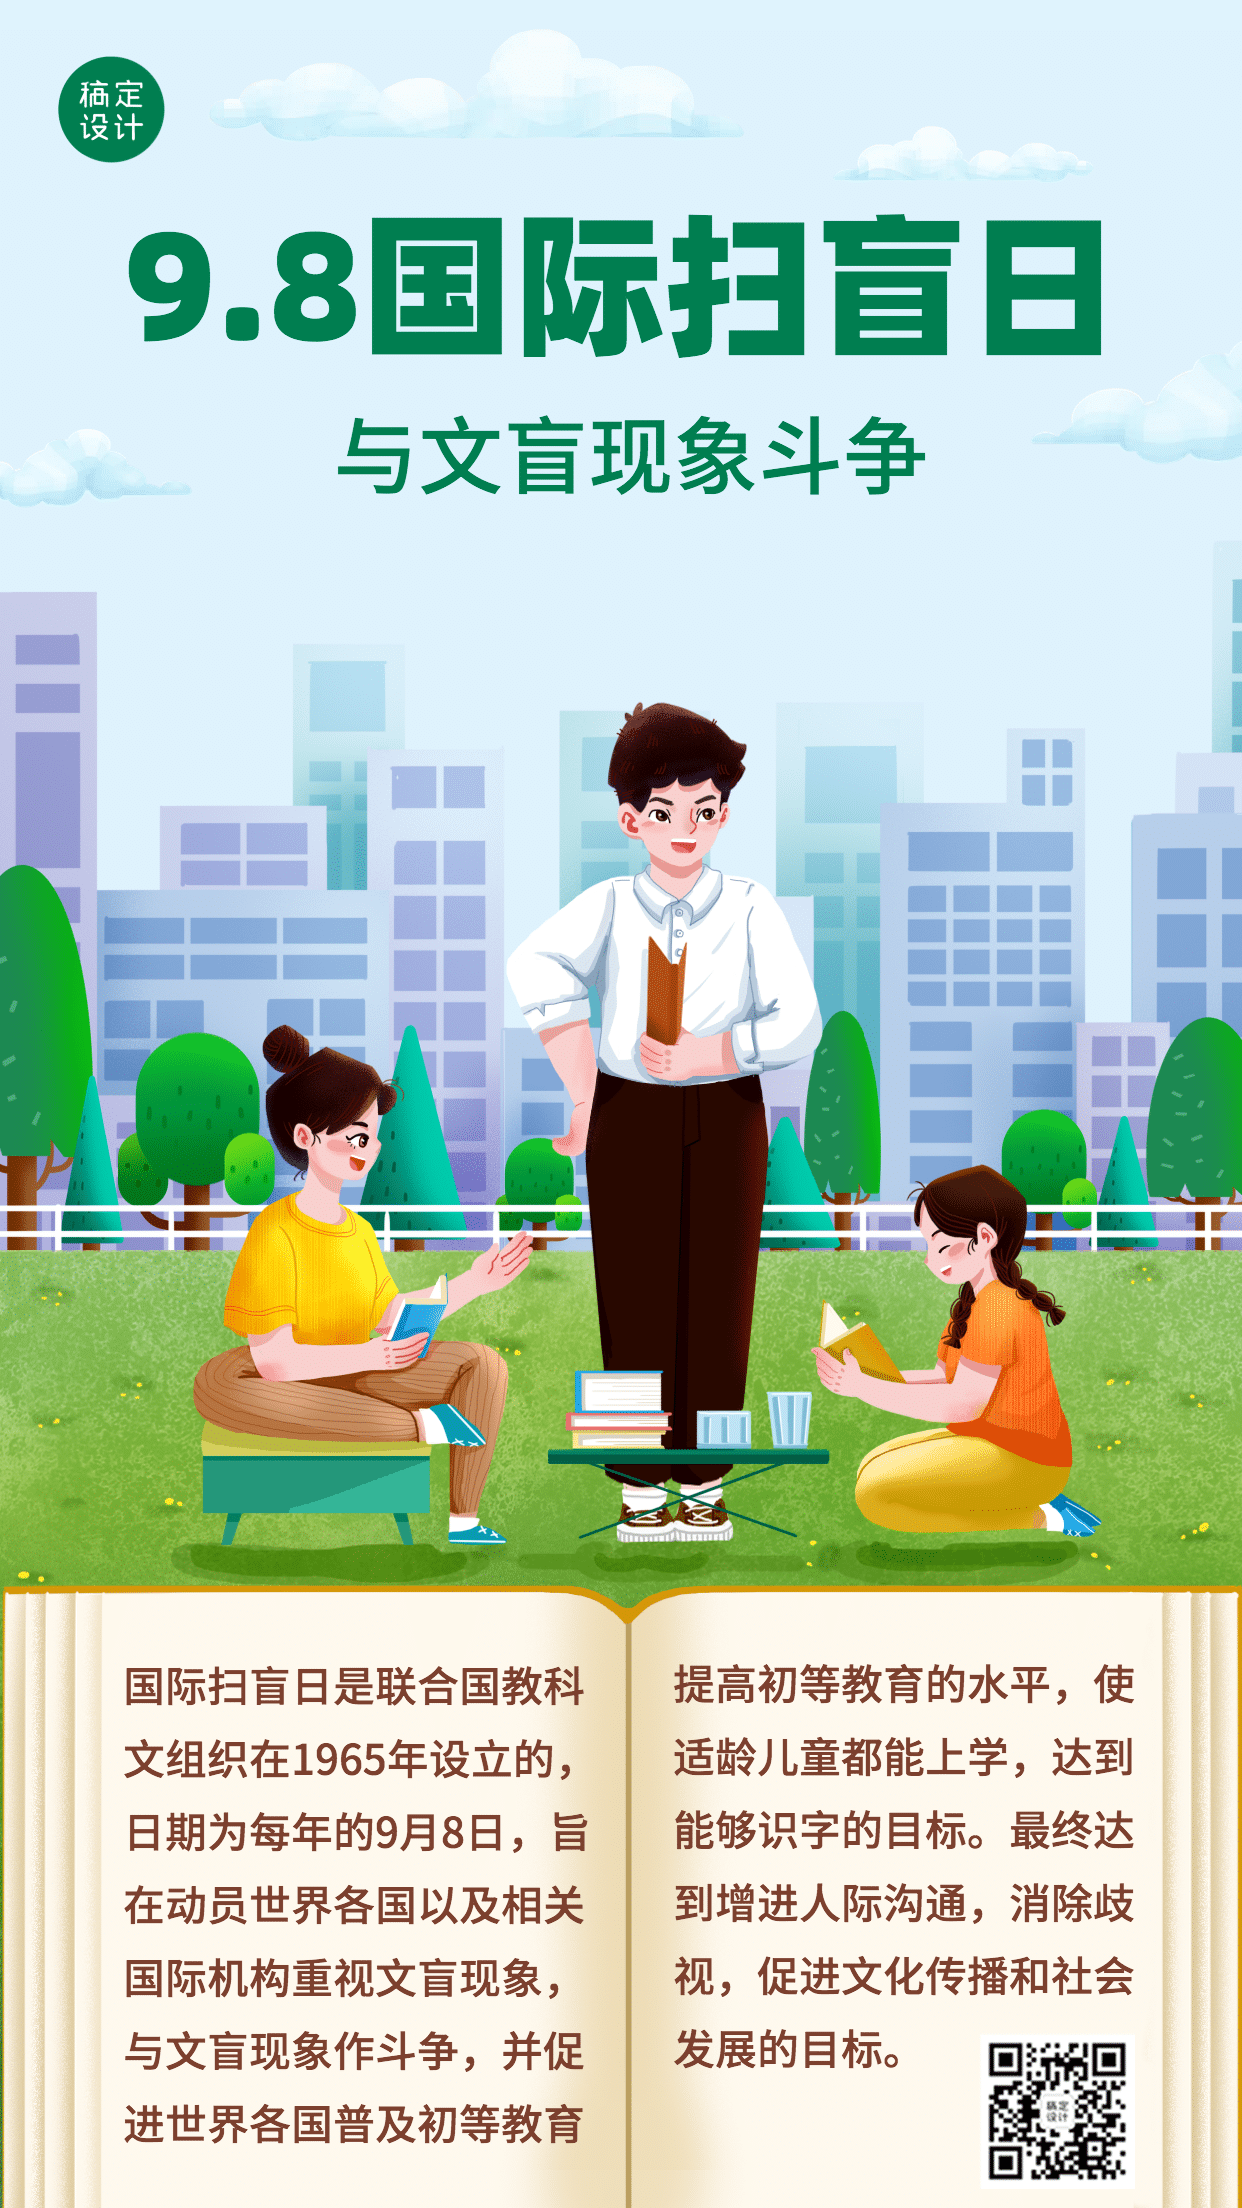 国际扫盲日文化教育手绘手机海报